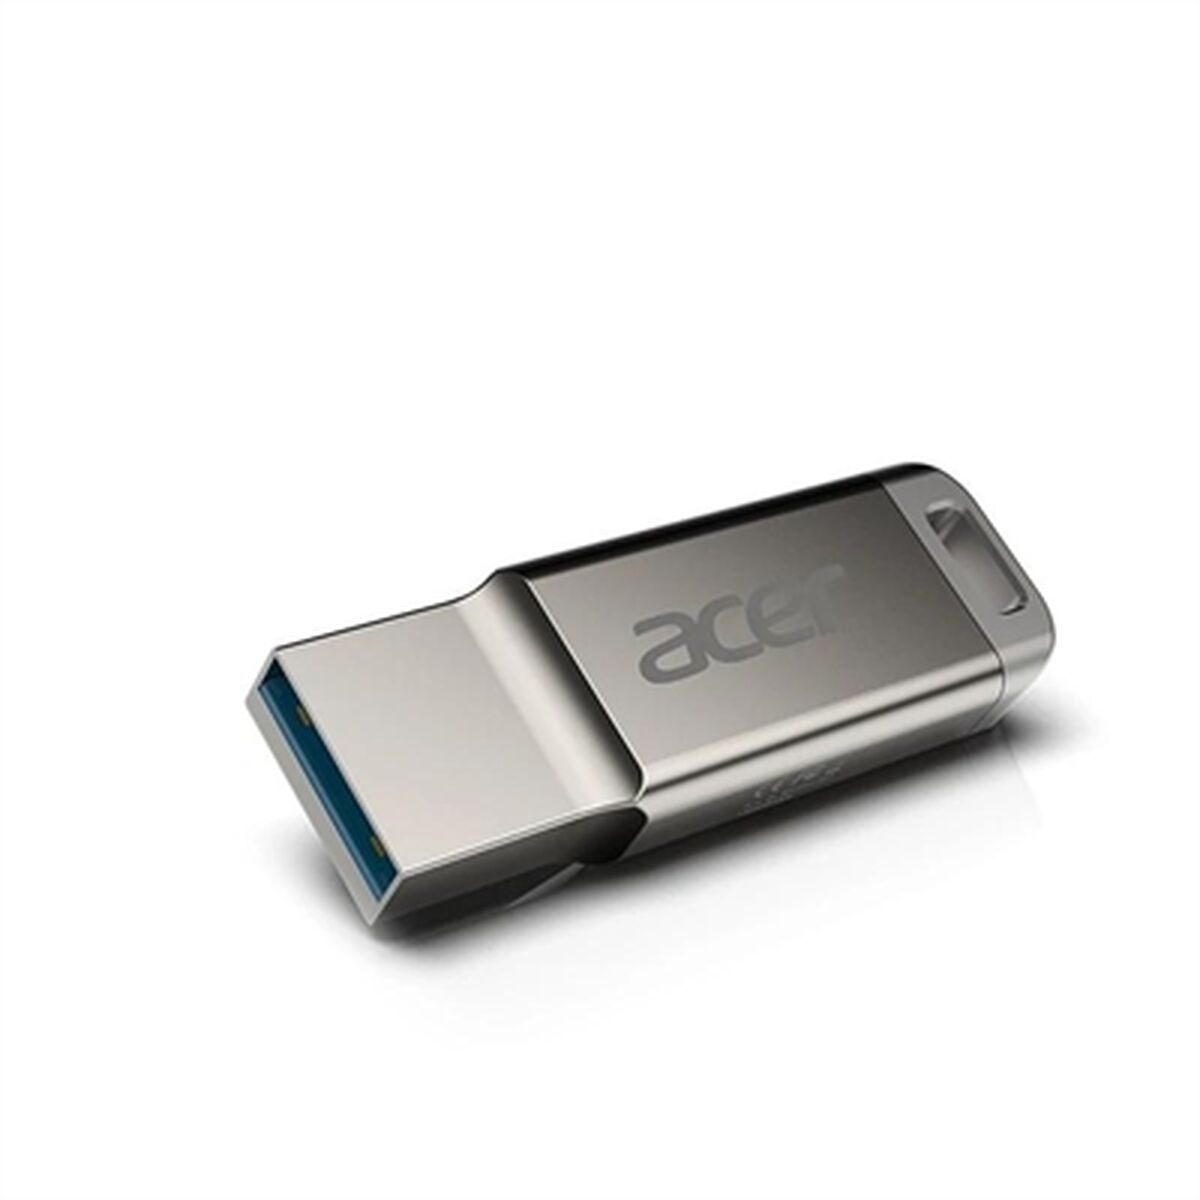 USB-stik Acer UM310  1 TB